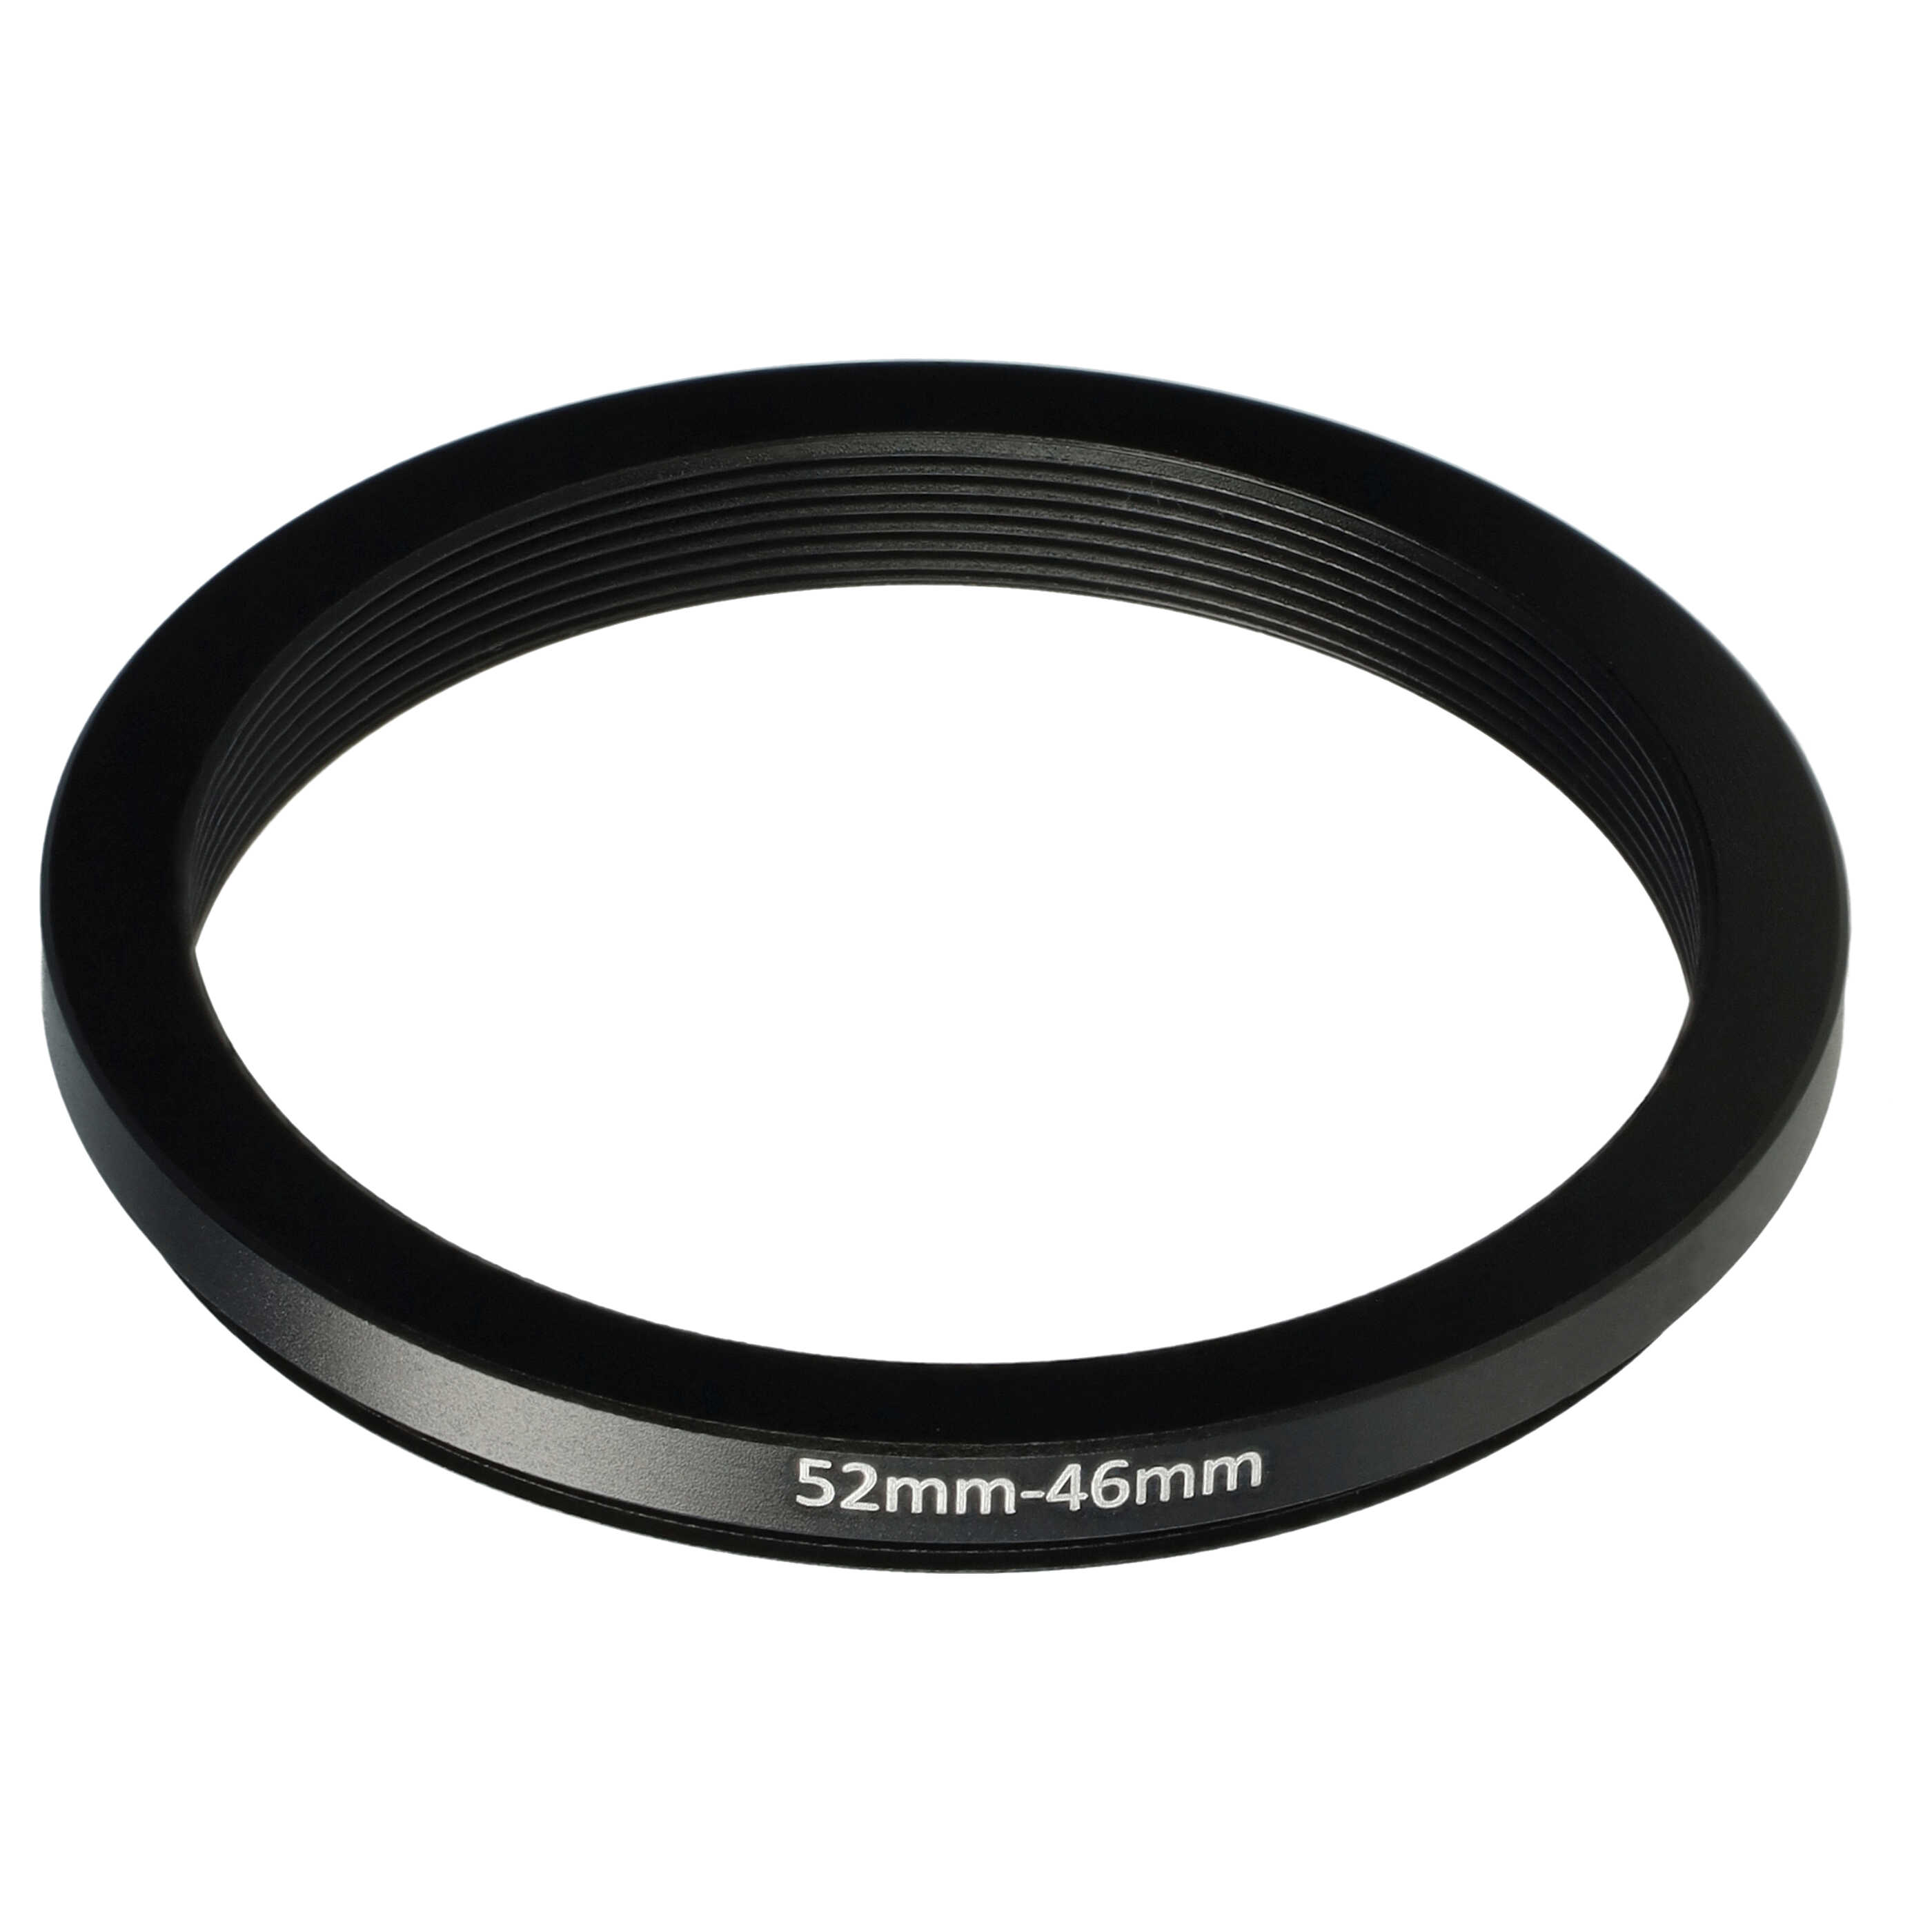 Anello adattatore step-down da 52 mm a 46 mm per obiettivo fotocamera - Adattatore filtro, metallo, nero